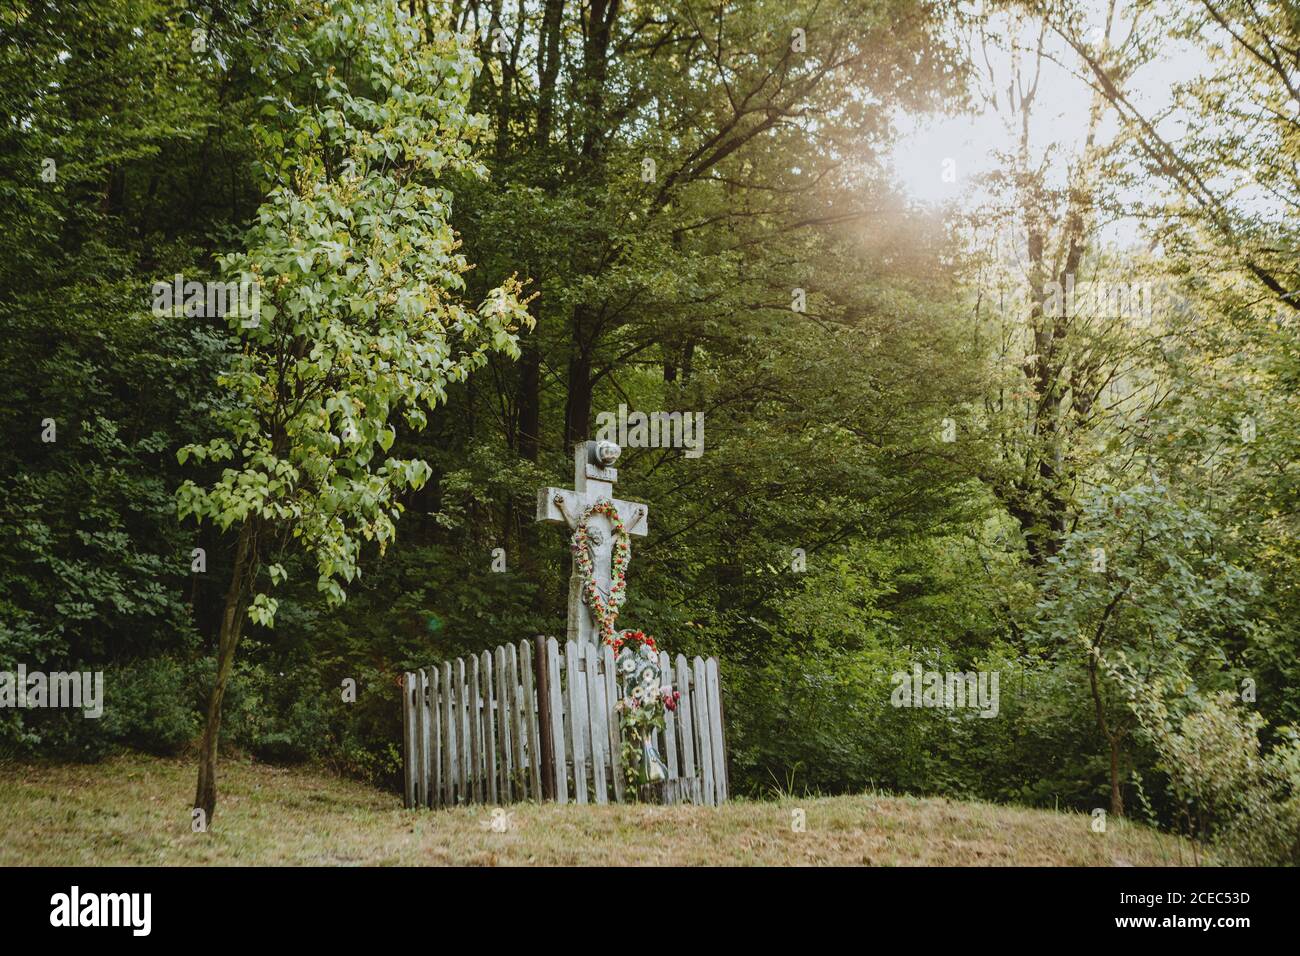 Christliches Steinkreuz mit Jesus als Ort der Anbetung Für Dorfbewohner aus dem nahe gelegenen rumänischen Dorf auf dem stehen Waldrand Stockfoto